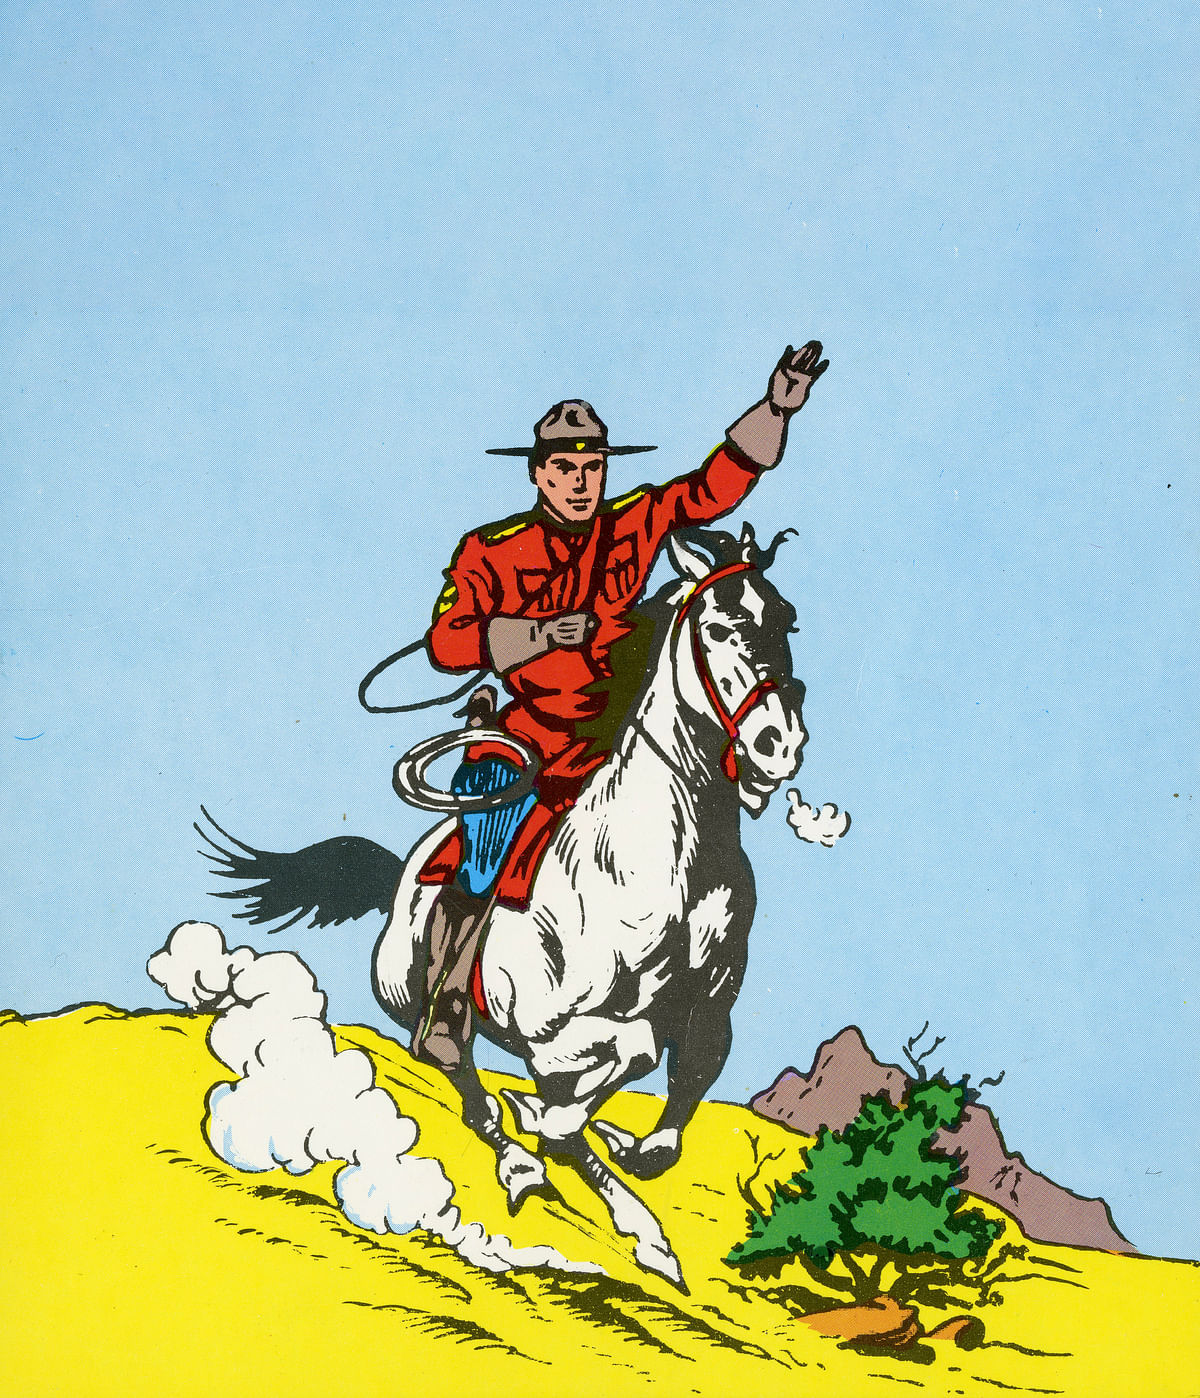 Ratsupoliisi King rymisteli Seura-lehdessä aina vuoteen 2020 saakka. Samoja sarjoja julkaistiin yhä uudelleen, vaikka värisarjakin loppui jo vuonna 1954.